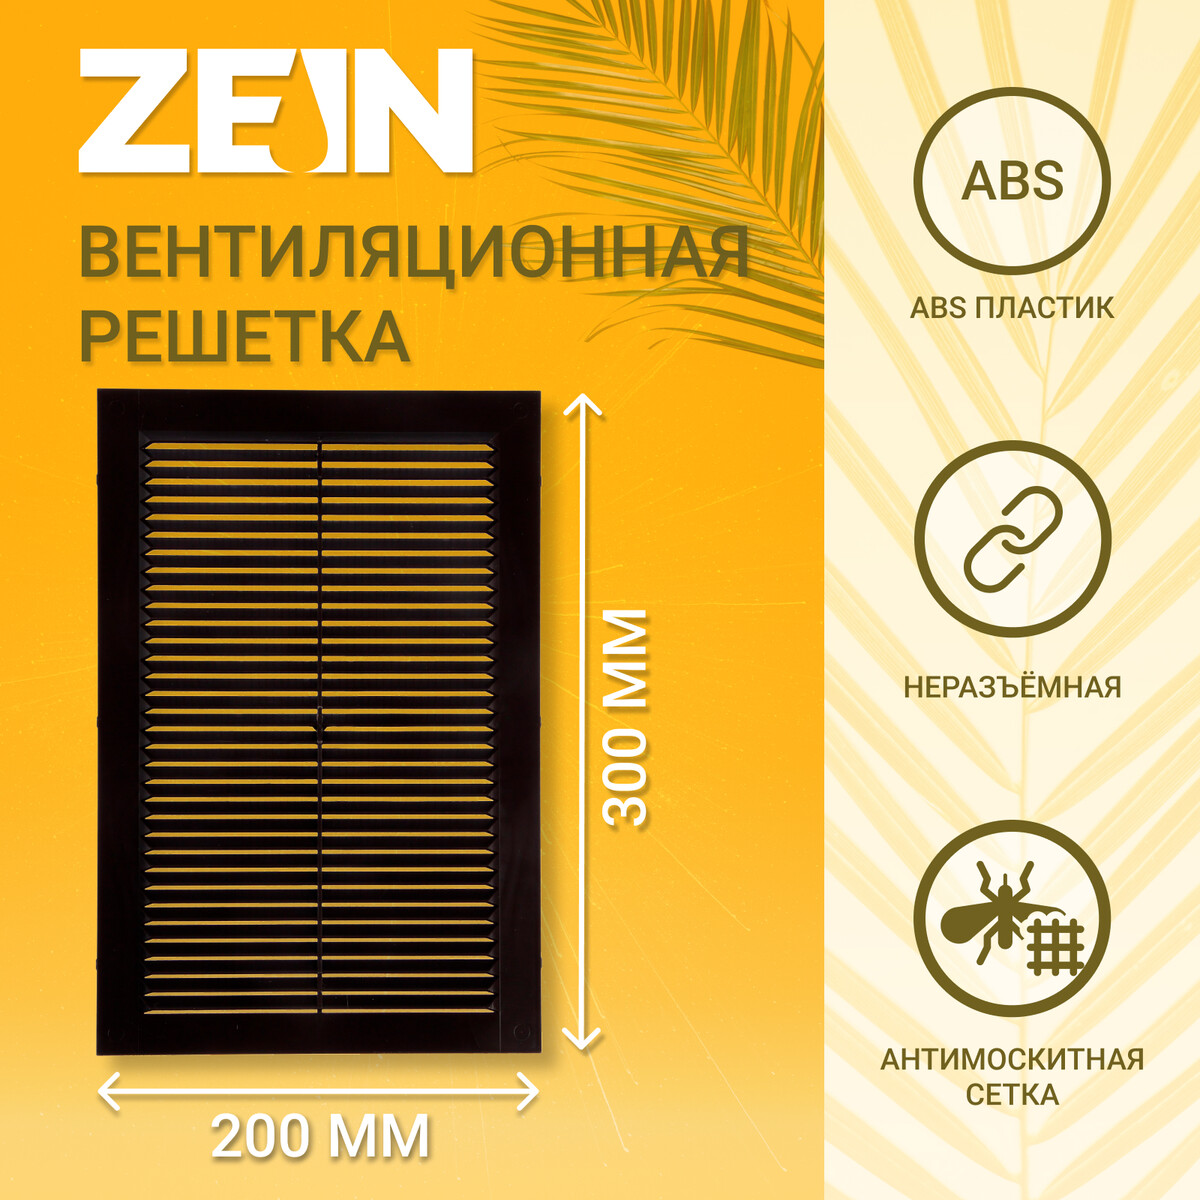 Решетка вентиляционная zein люкс л200кр, 200 x 300мм, с сеткой, неразъемная, коричневая